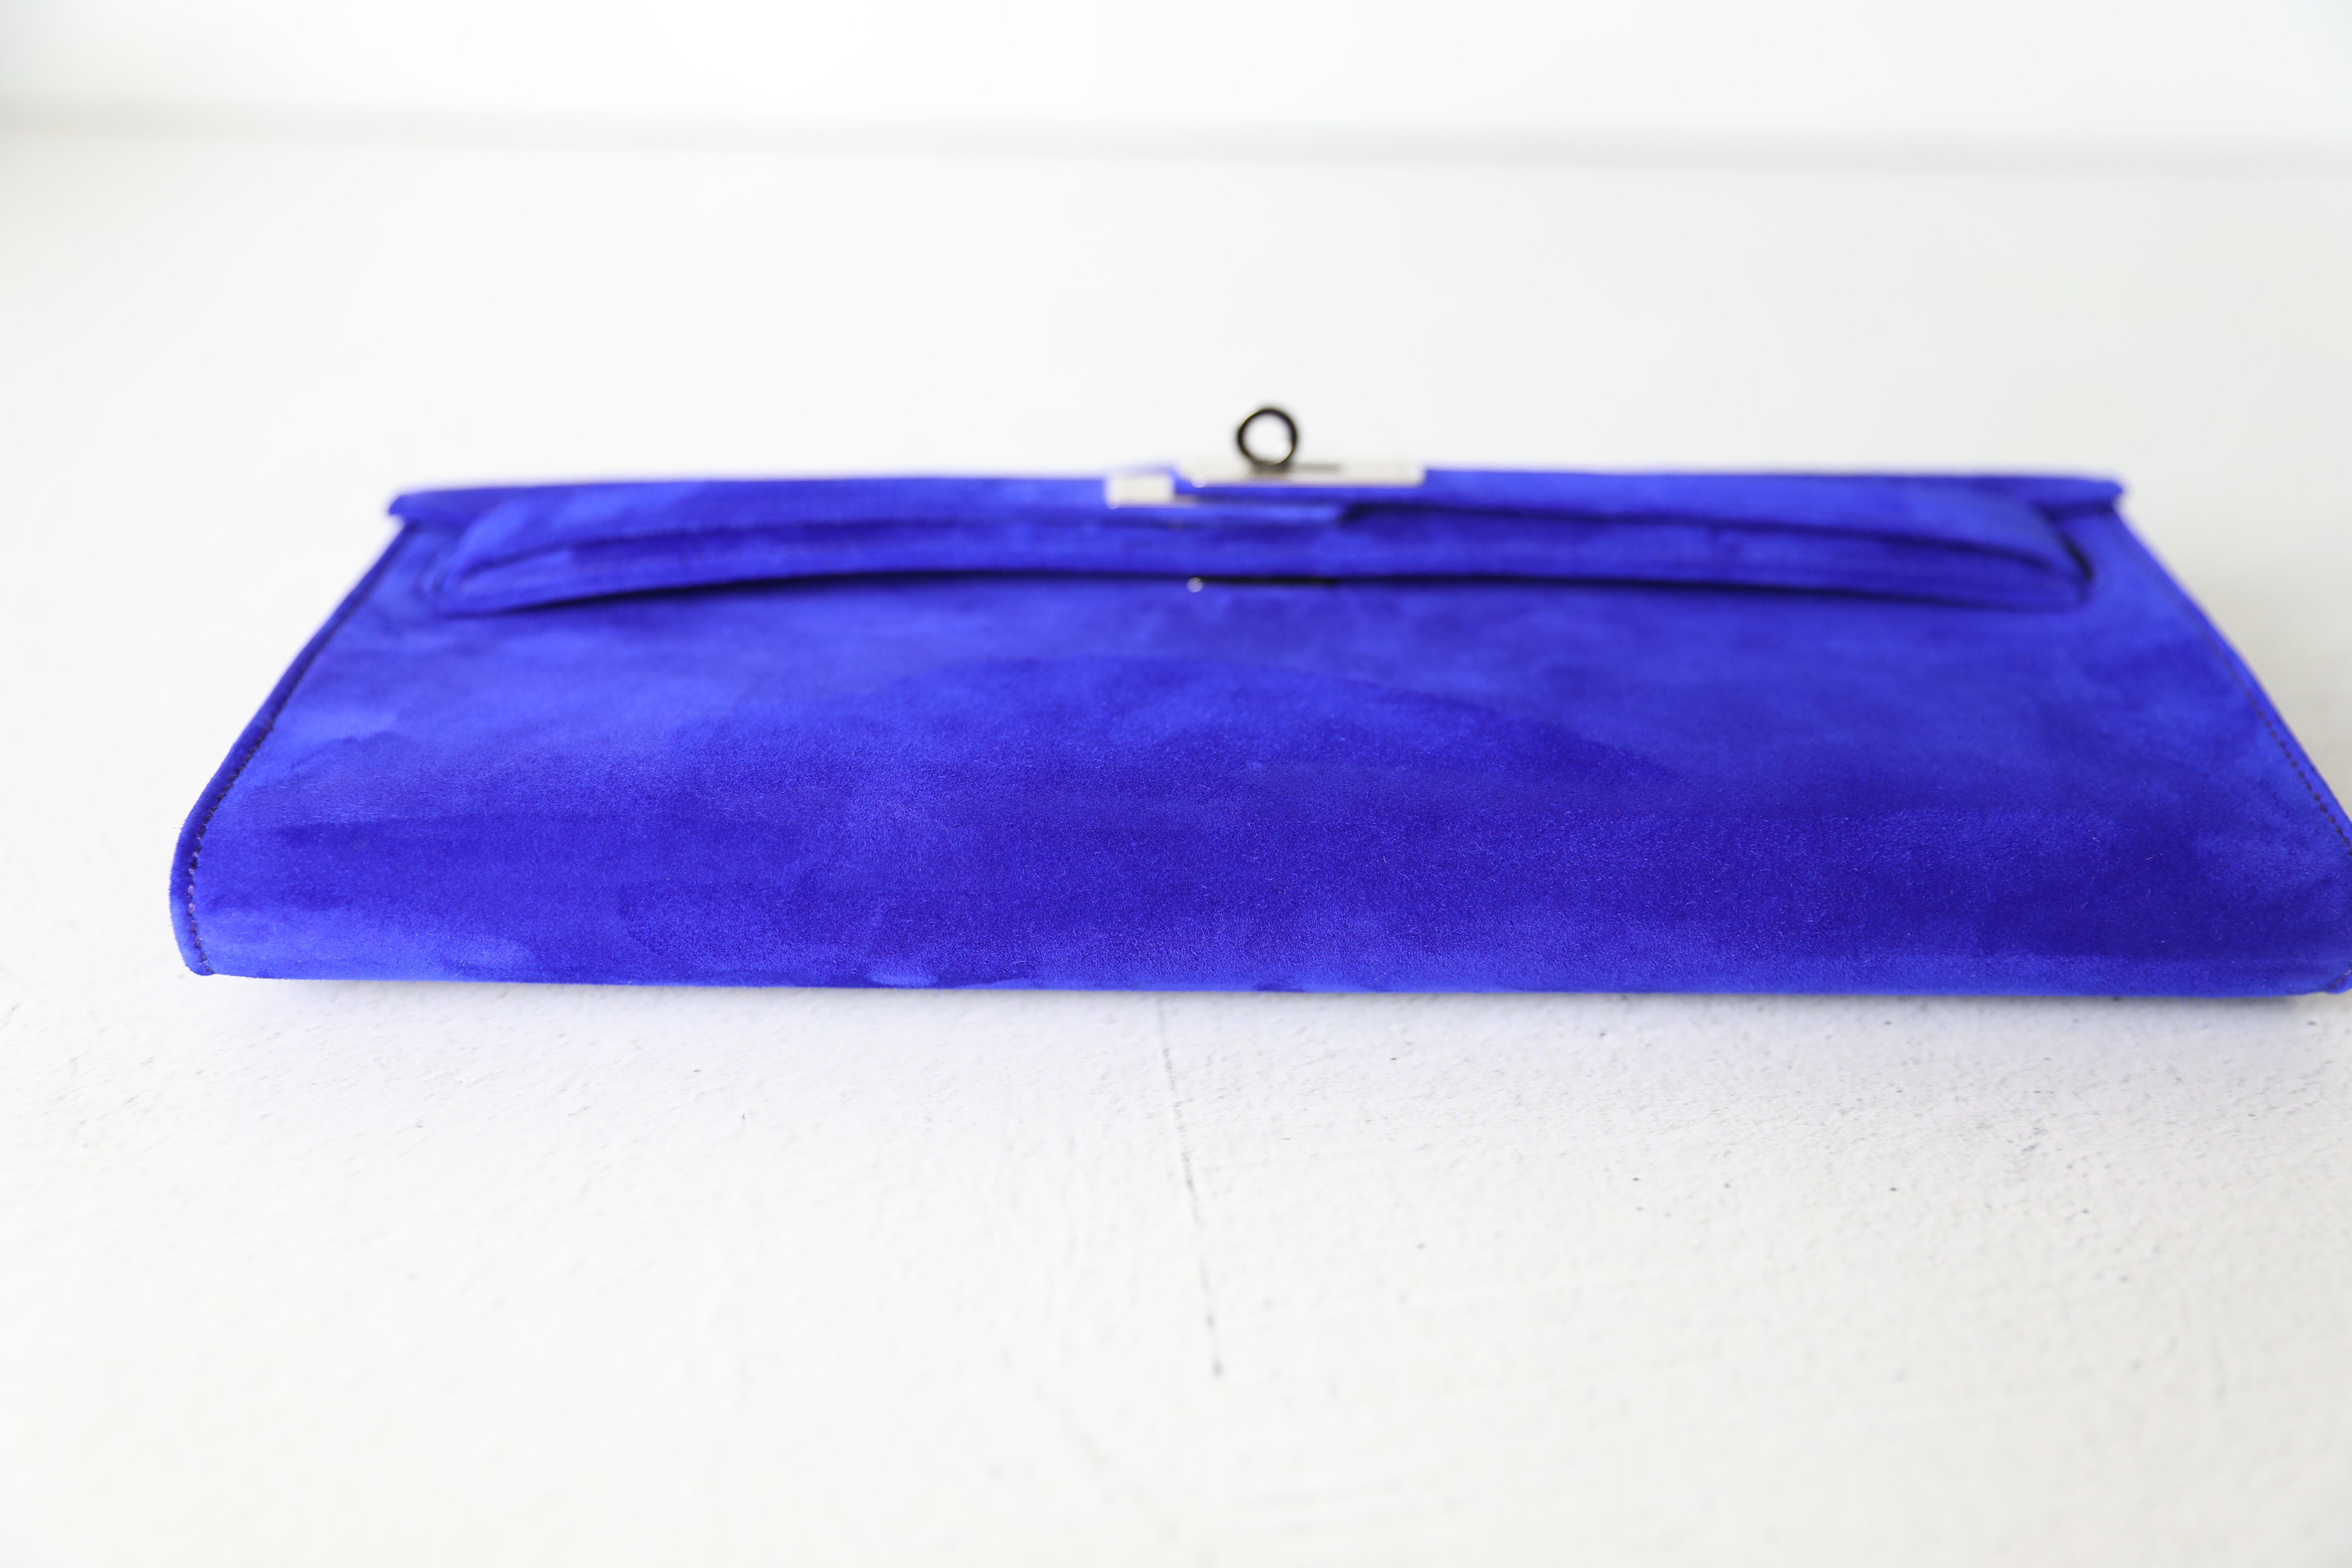 Hermes Kelly Pochette Doblis (Suede) Violet Purple Clutch Bag Gold at  1stDibs